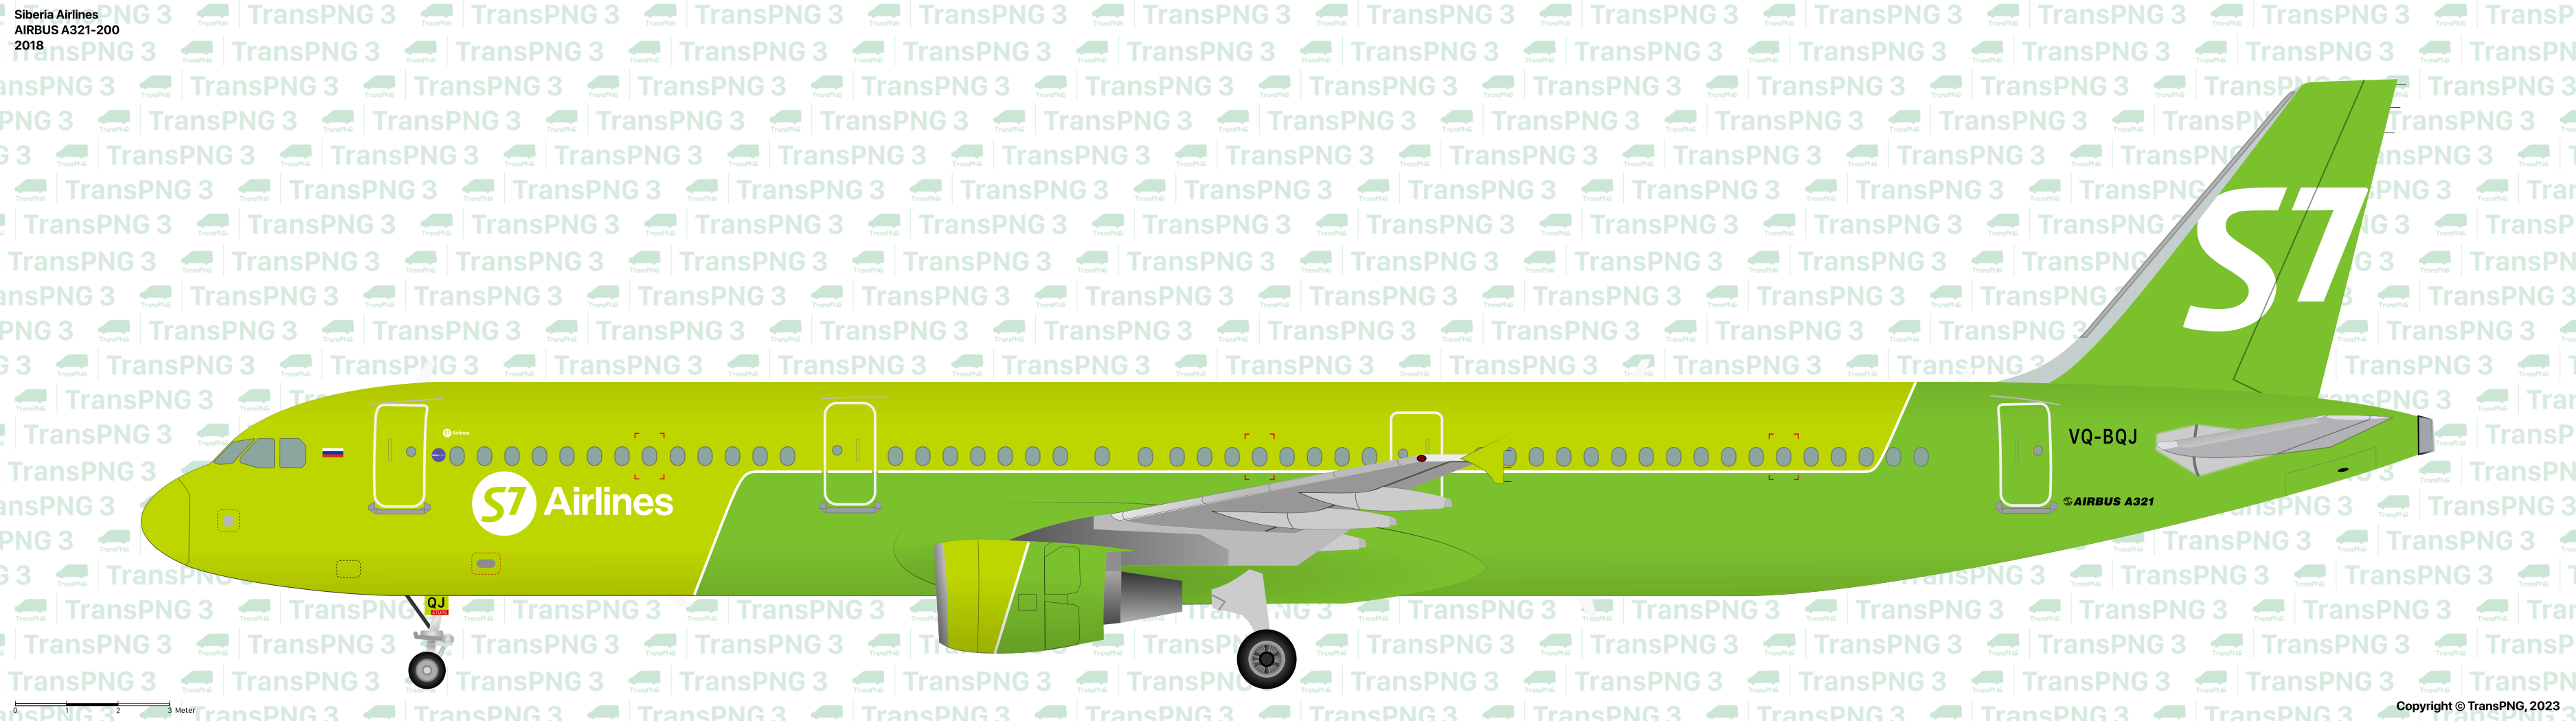 TransPNG.net | 分享世界各地多種交通工具的優秀繪圖 - 客機 53209950491_399bbe41b0_o